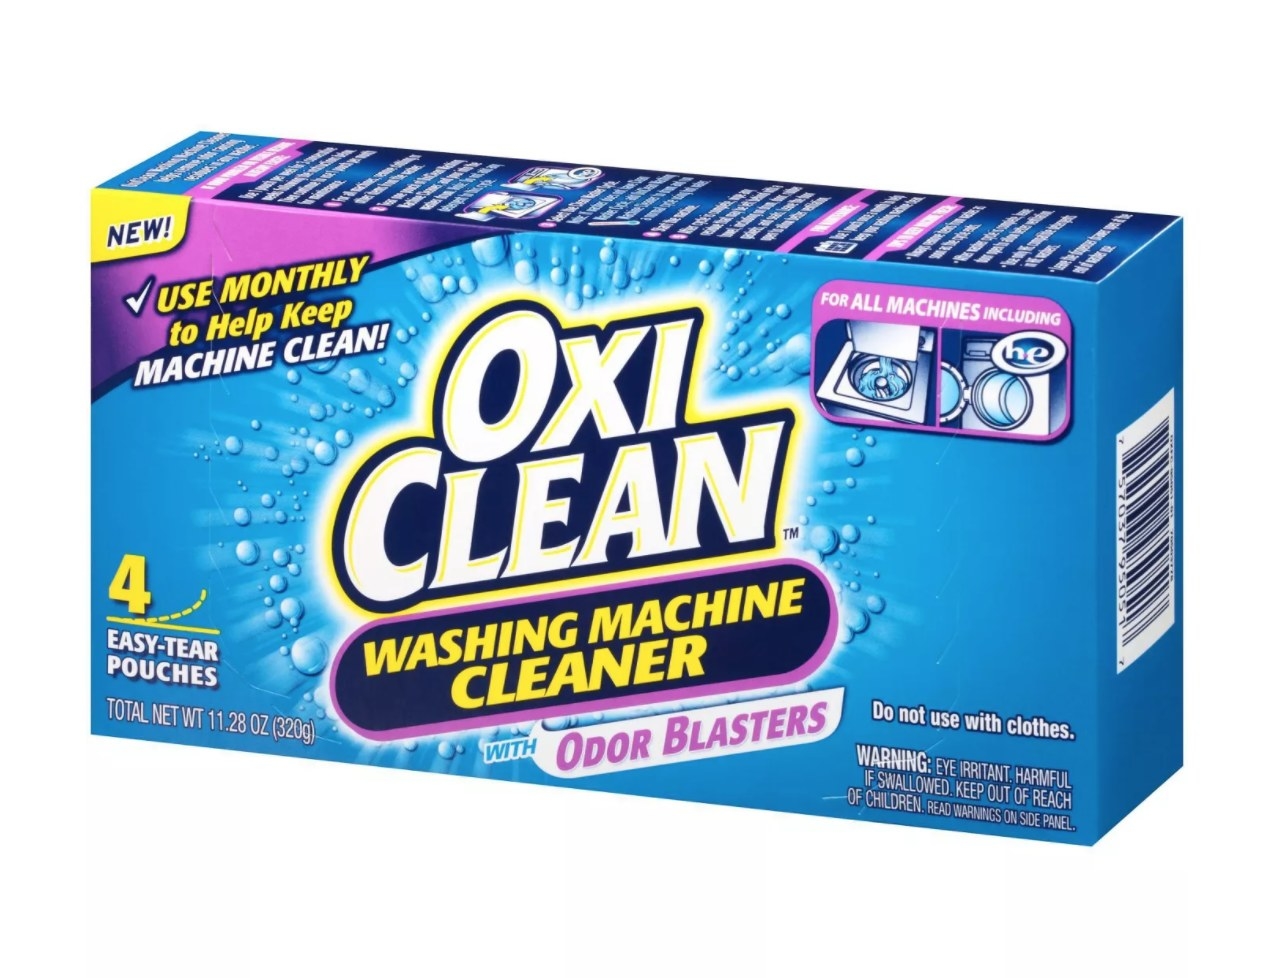 A box of Oxi Clean